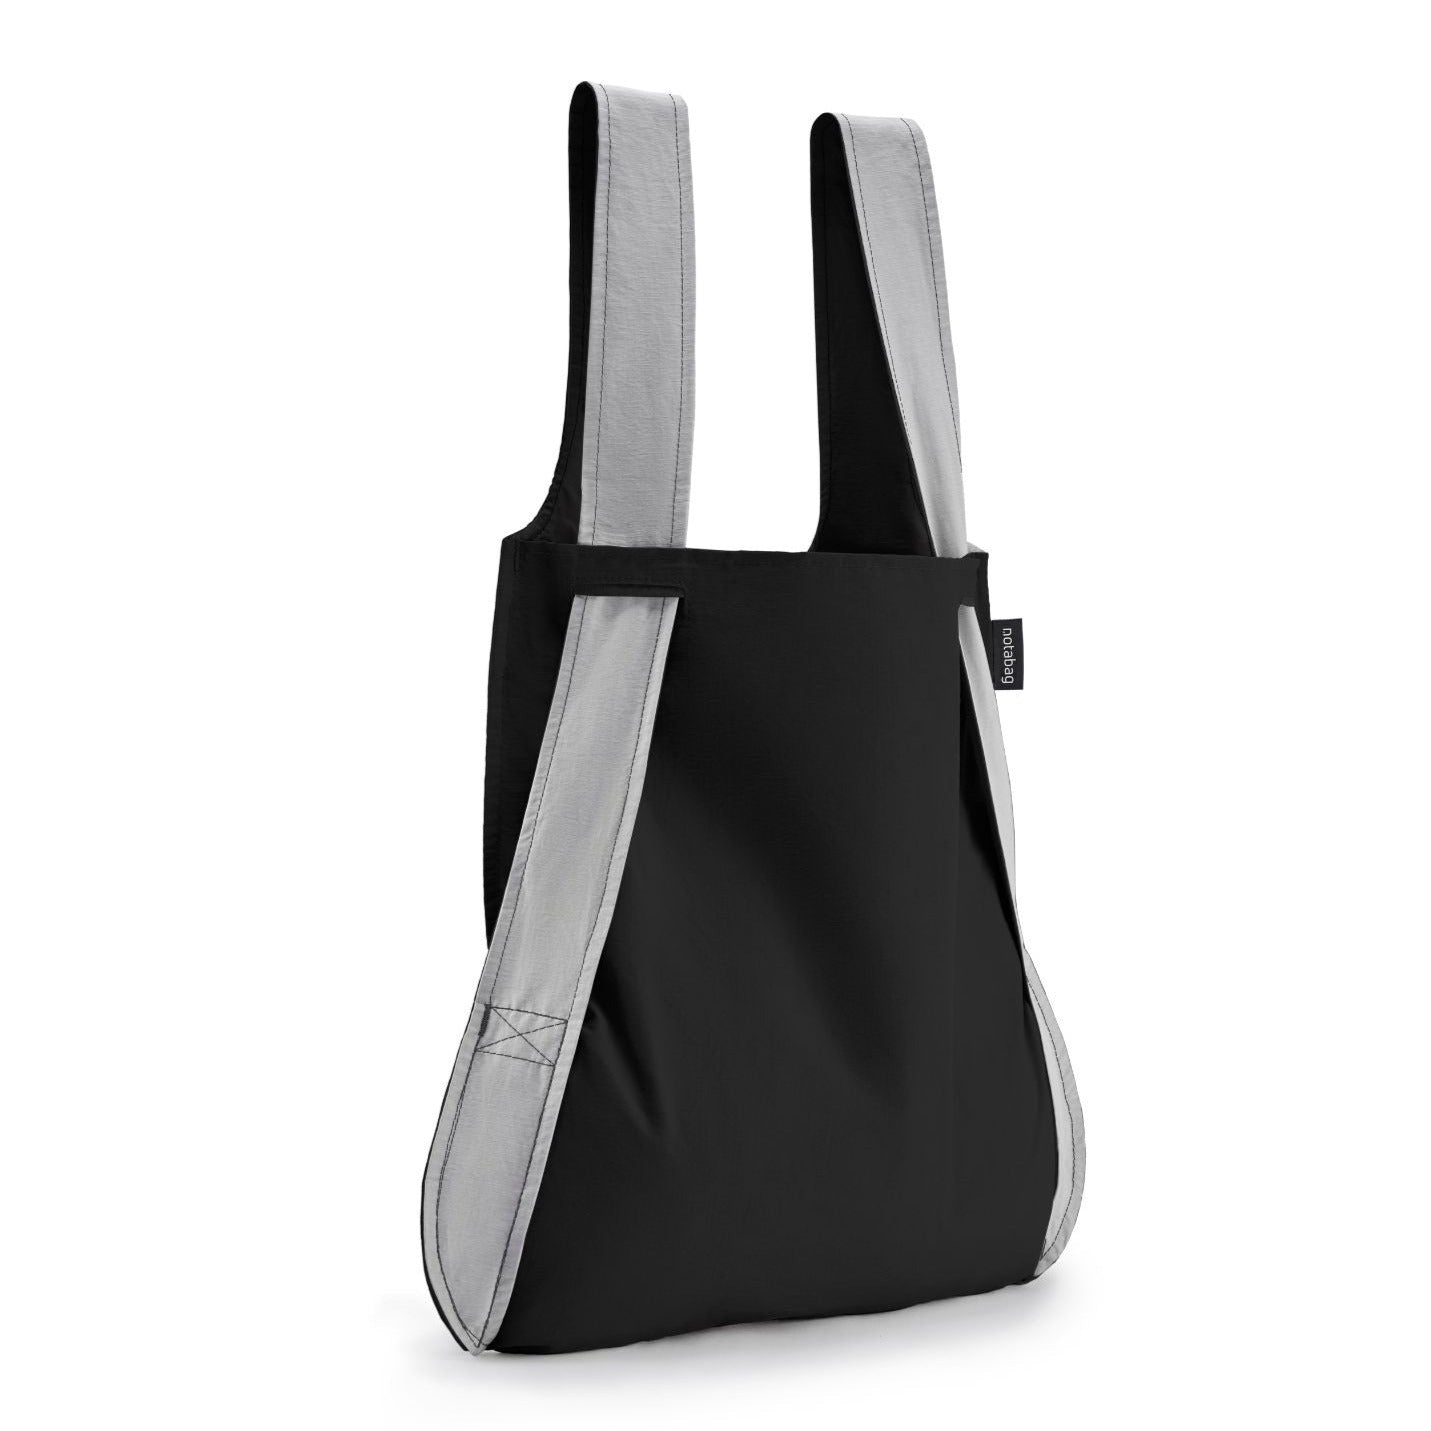 Notabag original foldable handbag & backpack grey black